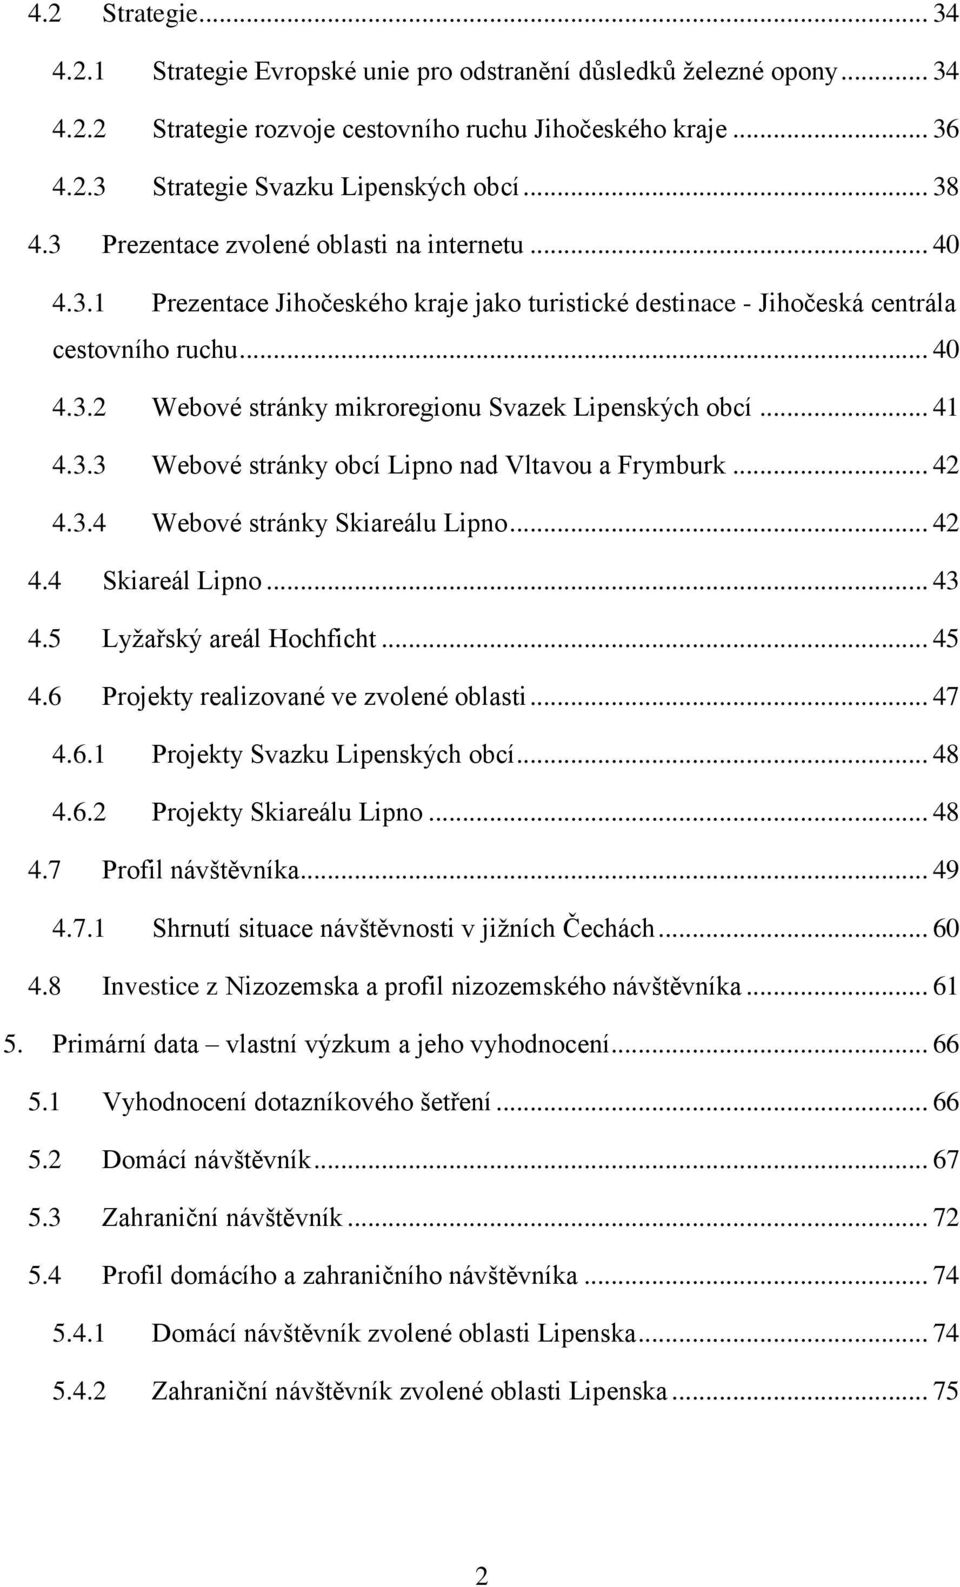 .. 41 4.3.3 Webové stránky obcí Lipno nad Vltavou a Frymburk... 42 4.3.4 Webové stránky Skiareálu Lipno... 42 4.4 Skiareál Lipno... 43 4.5 Lyžařský areál Hochficht... 45 4.